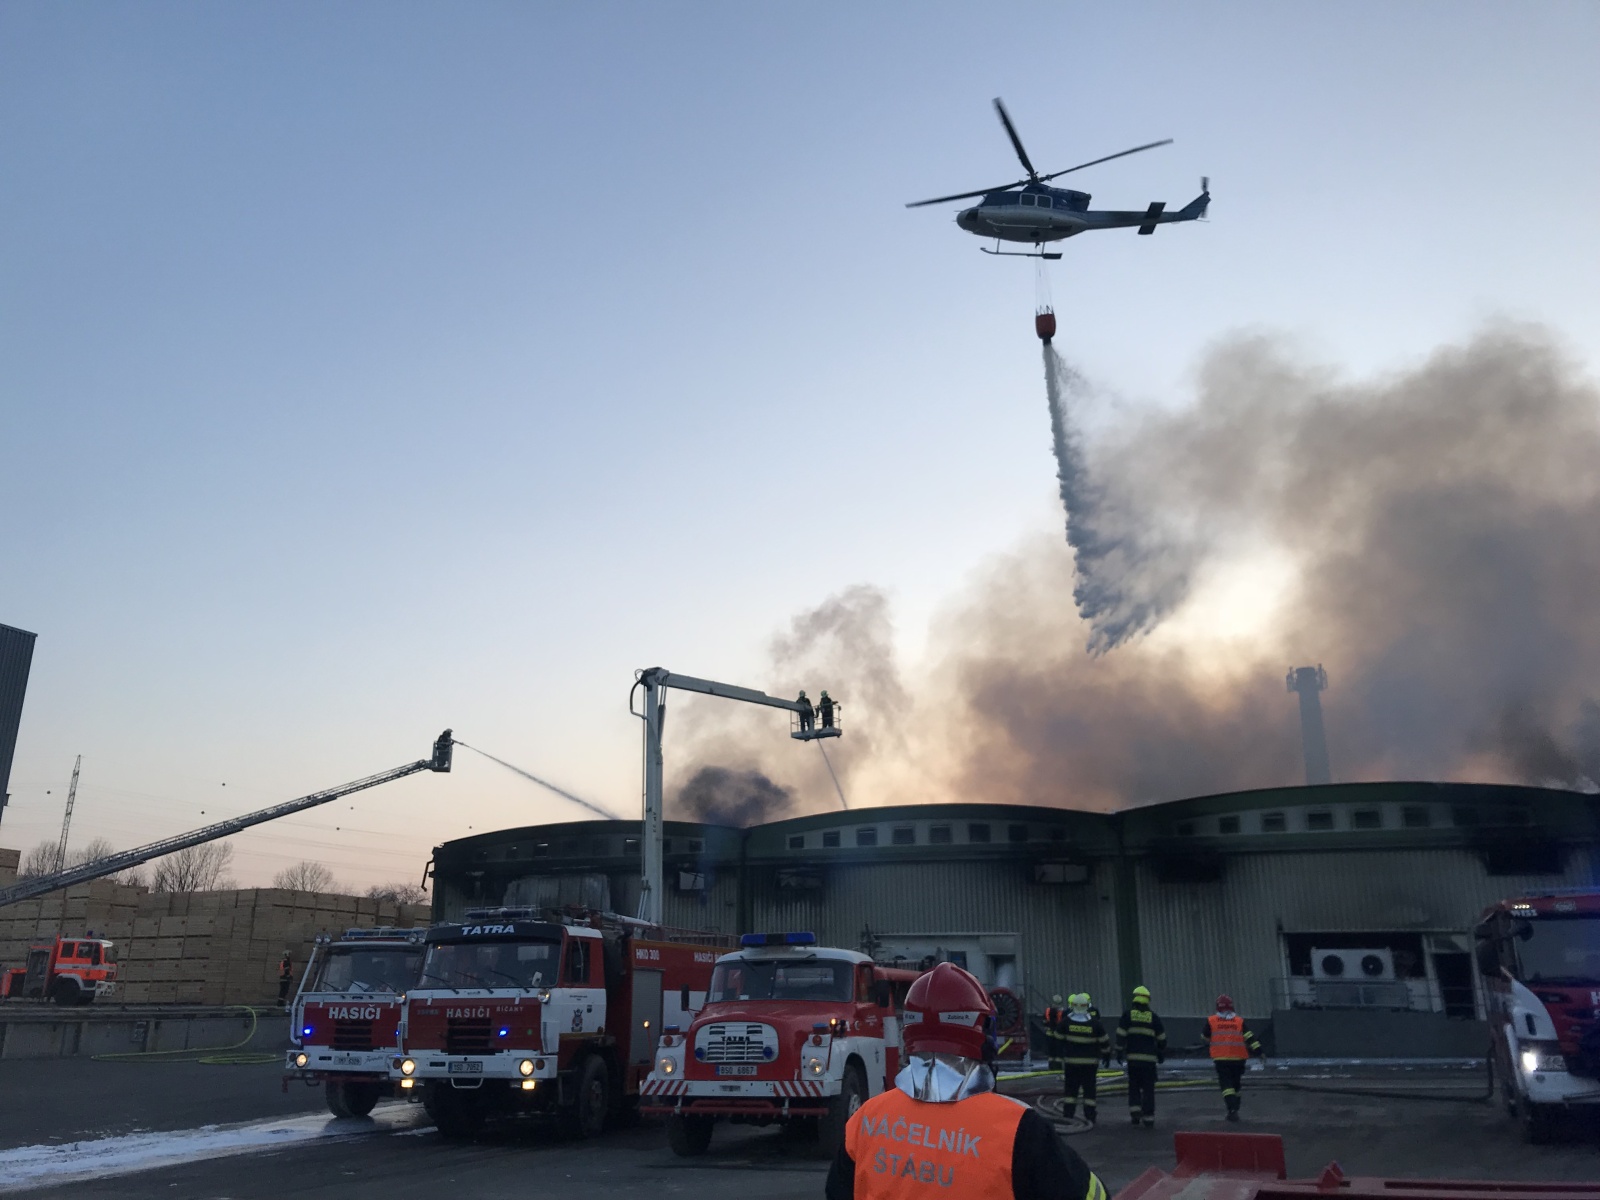 55_SČK_Požár mrazíren v Mochově_vrtulník s bambi vakem provádí shoz.jpg